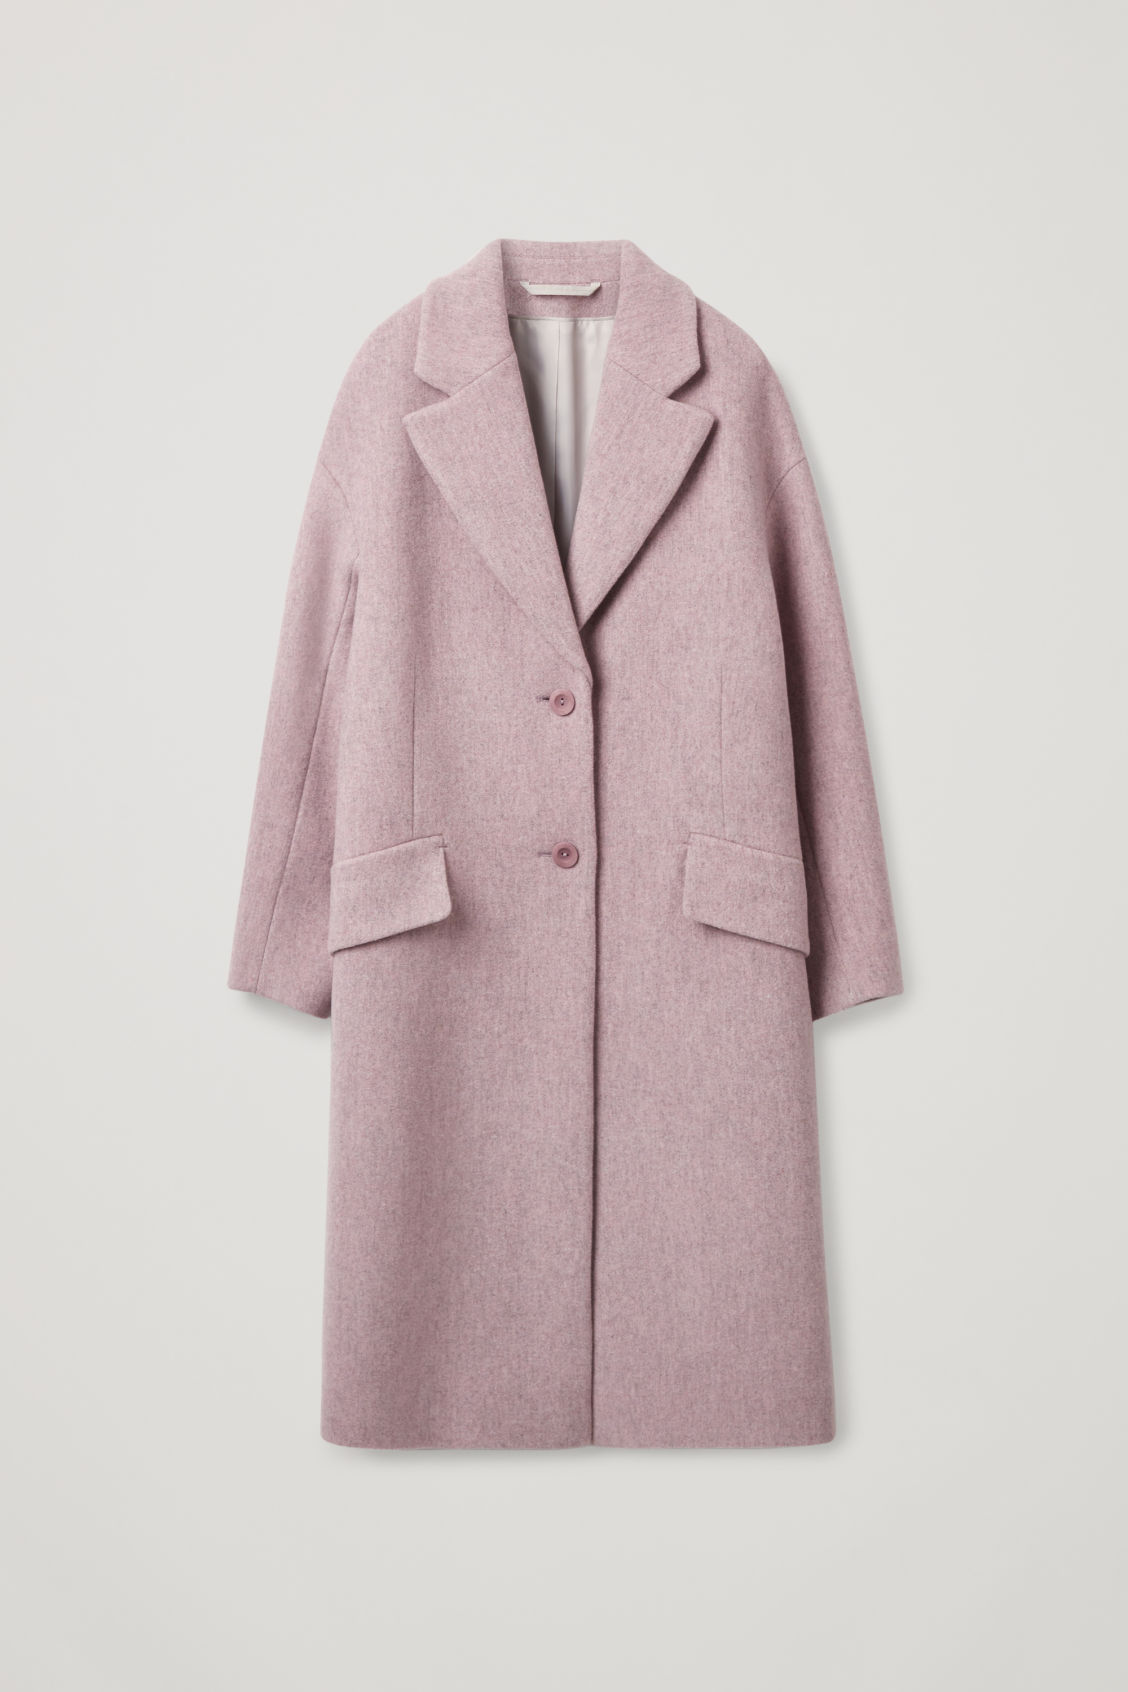 COS dusty pink wool coat